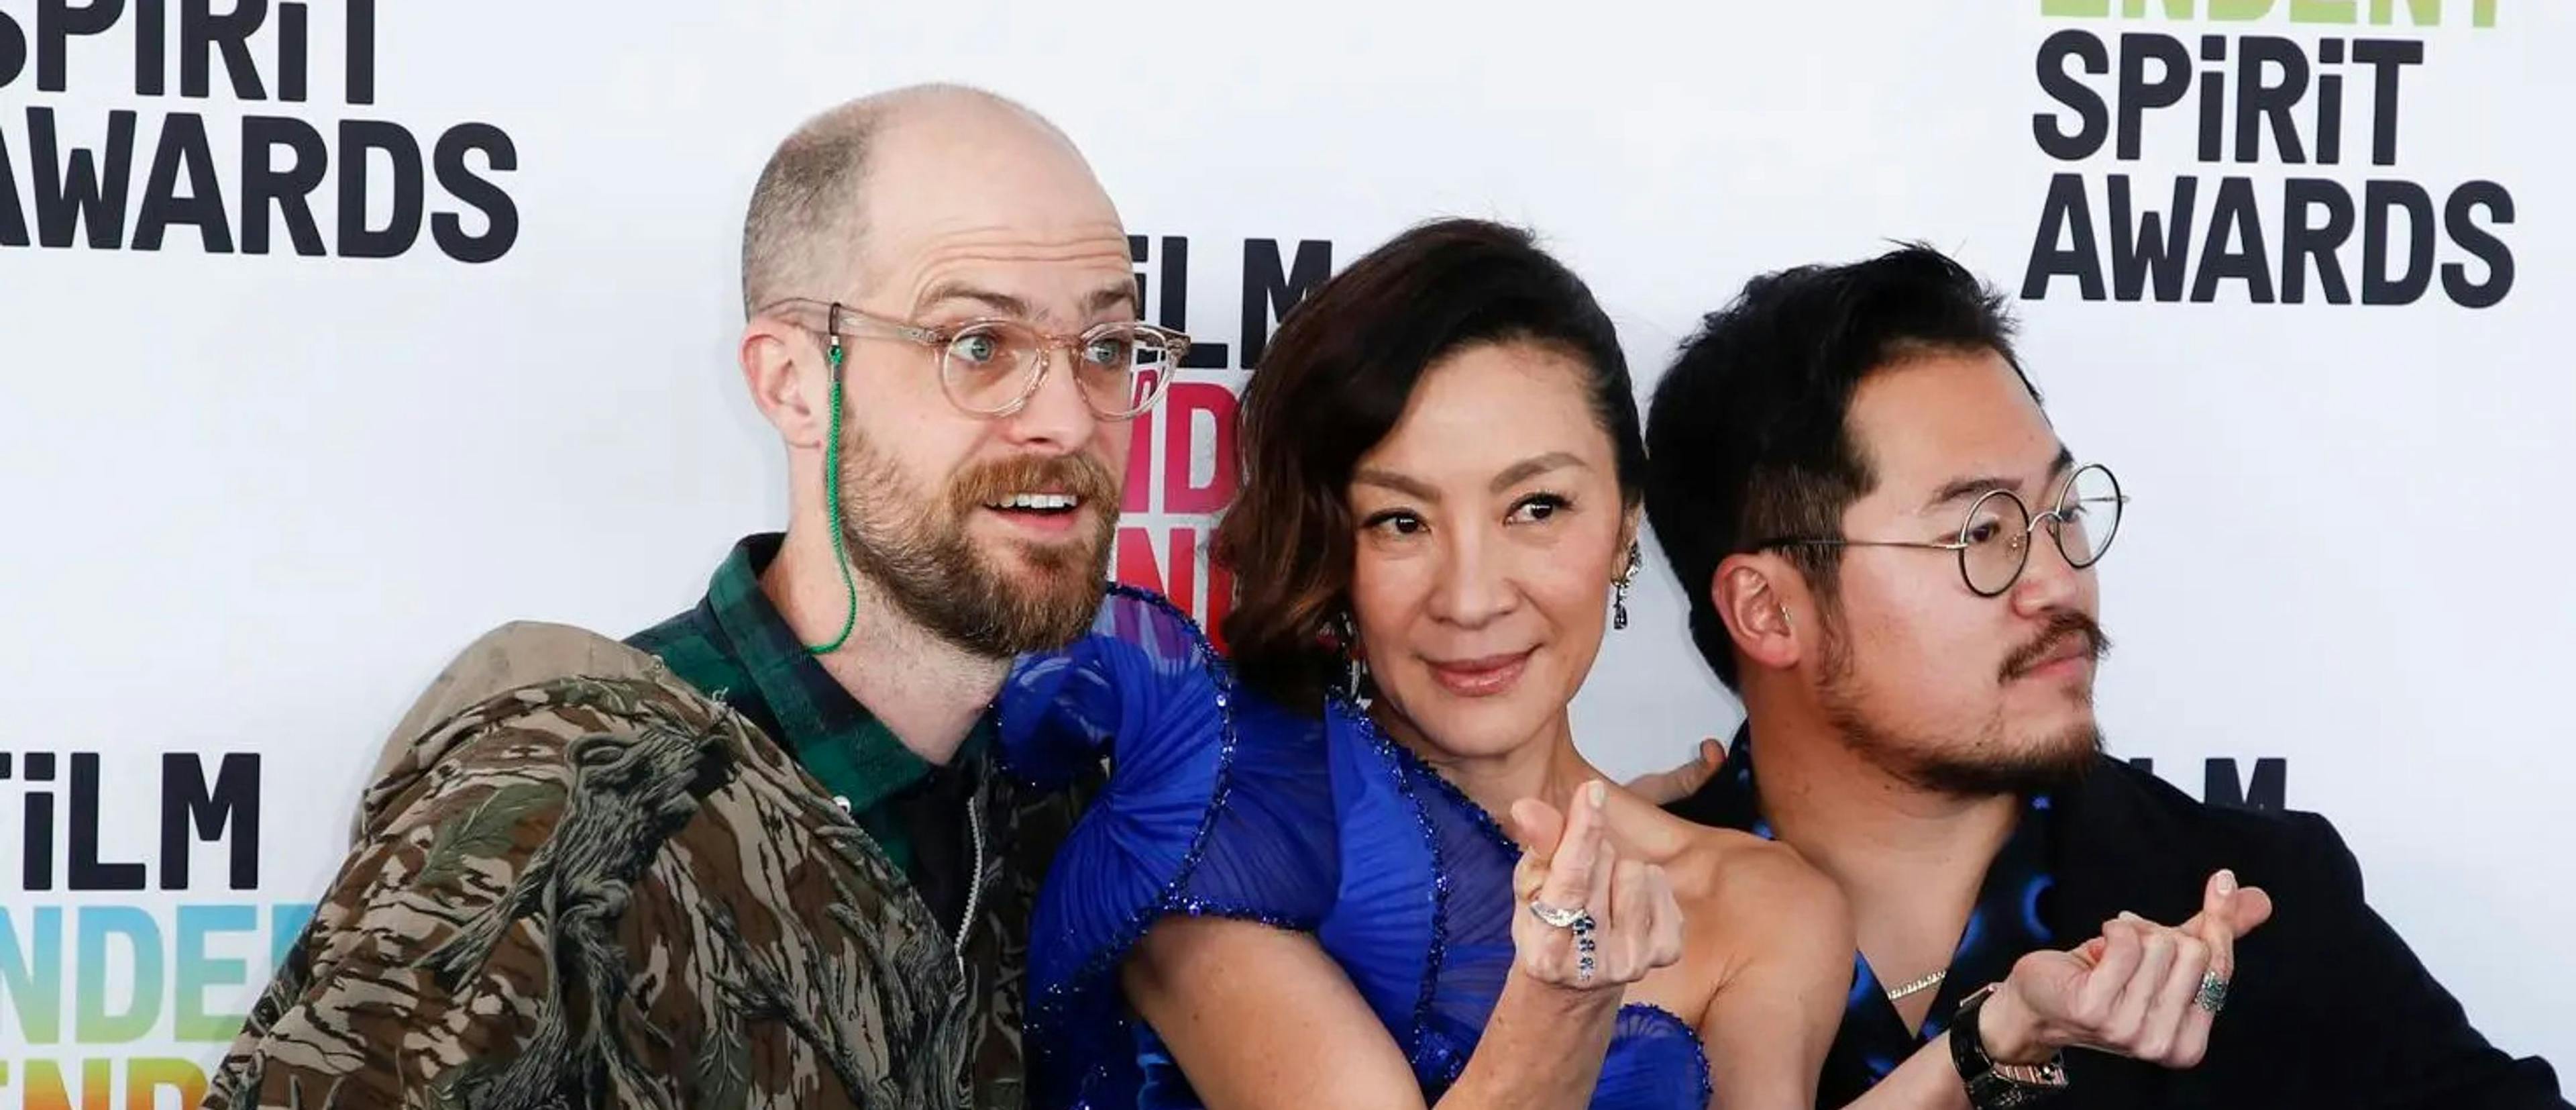 Los directores Daniel Scheinert y Daniel Kwan rodean a la actriz Michelle Yeoh en el photocall de los Spirit Awards